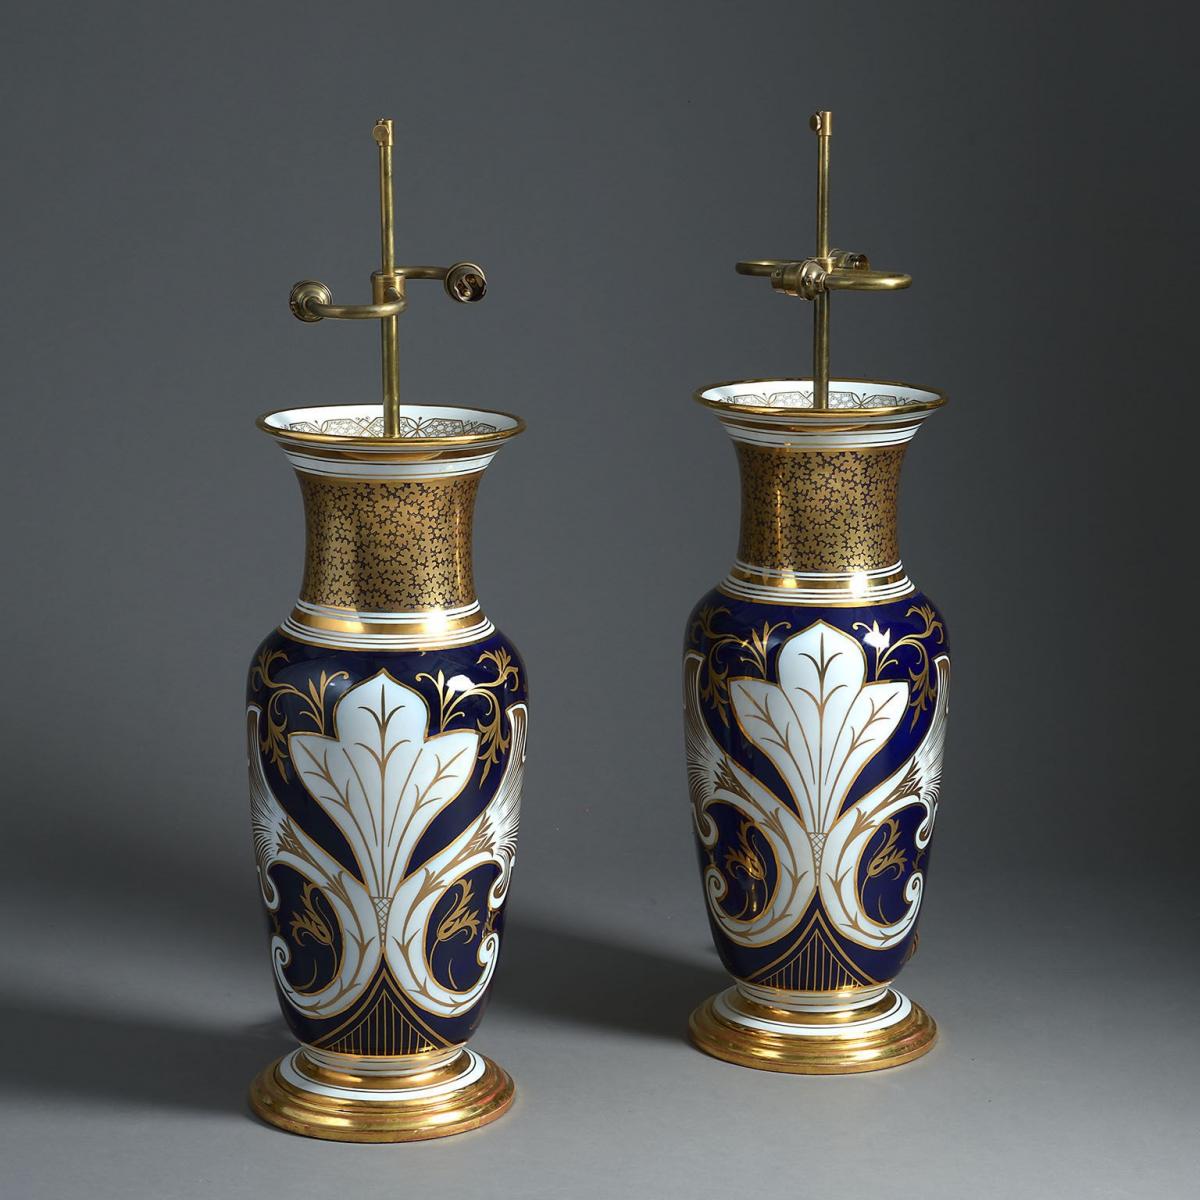 A Pair of Large Paris Porcelain Vases with Floral Panels